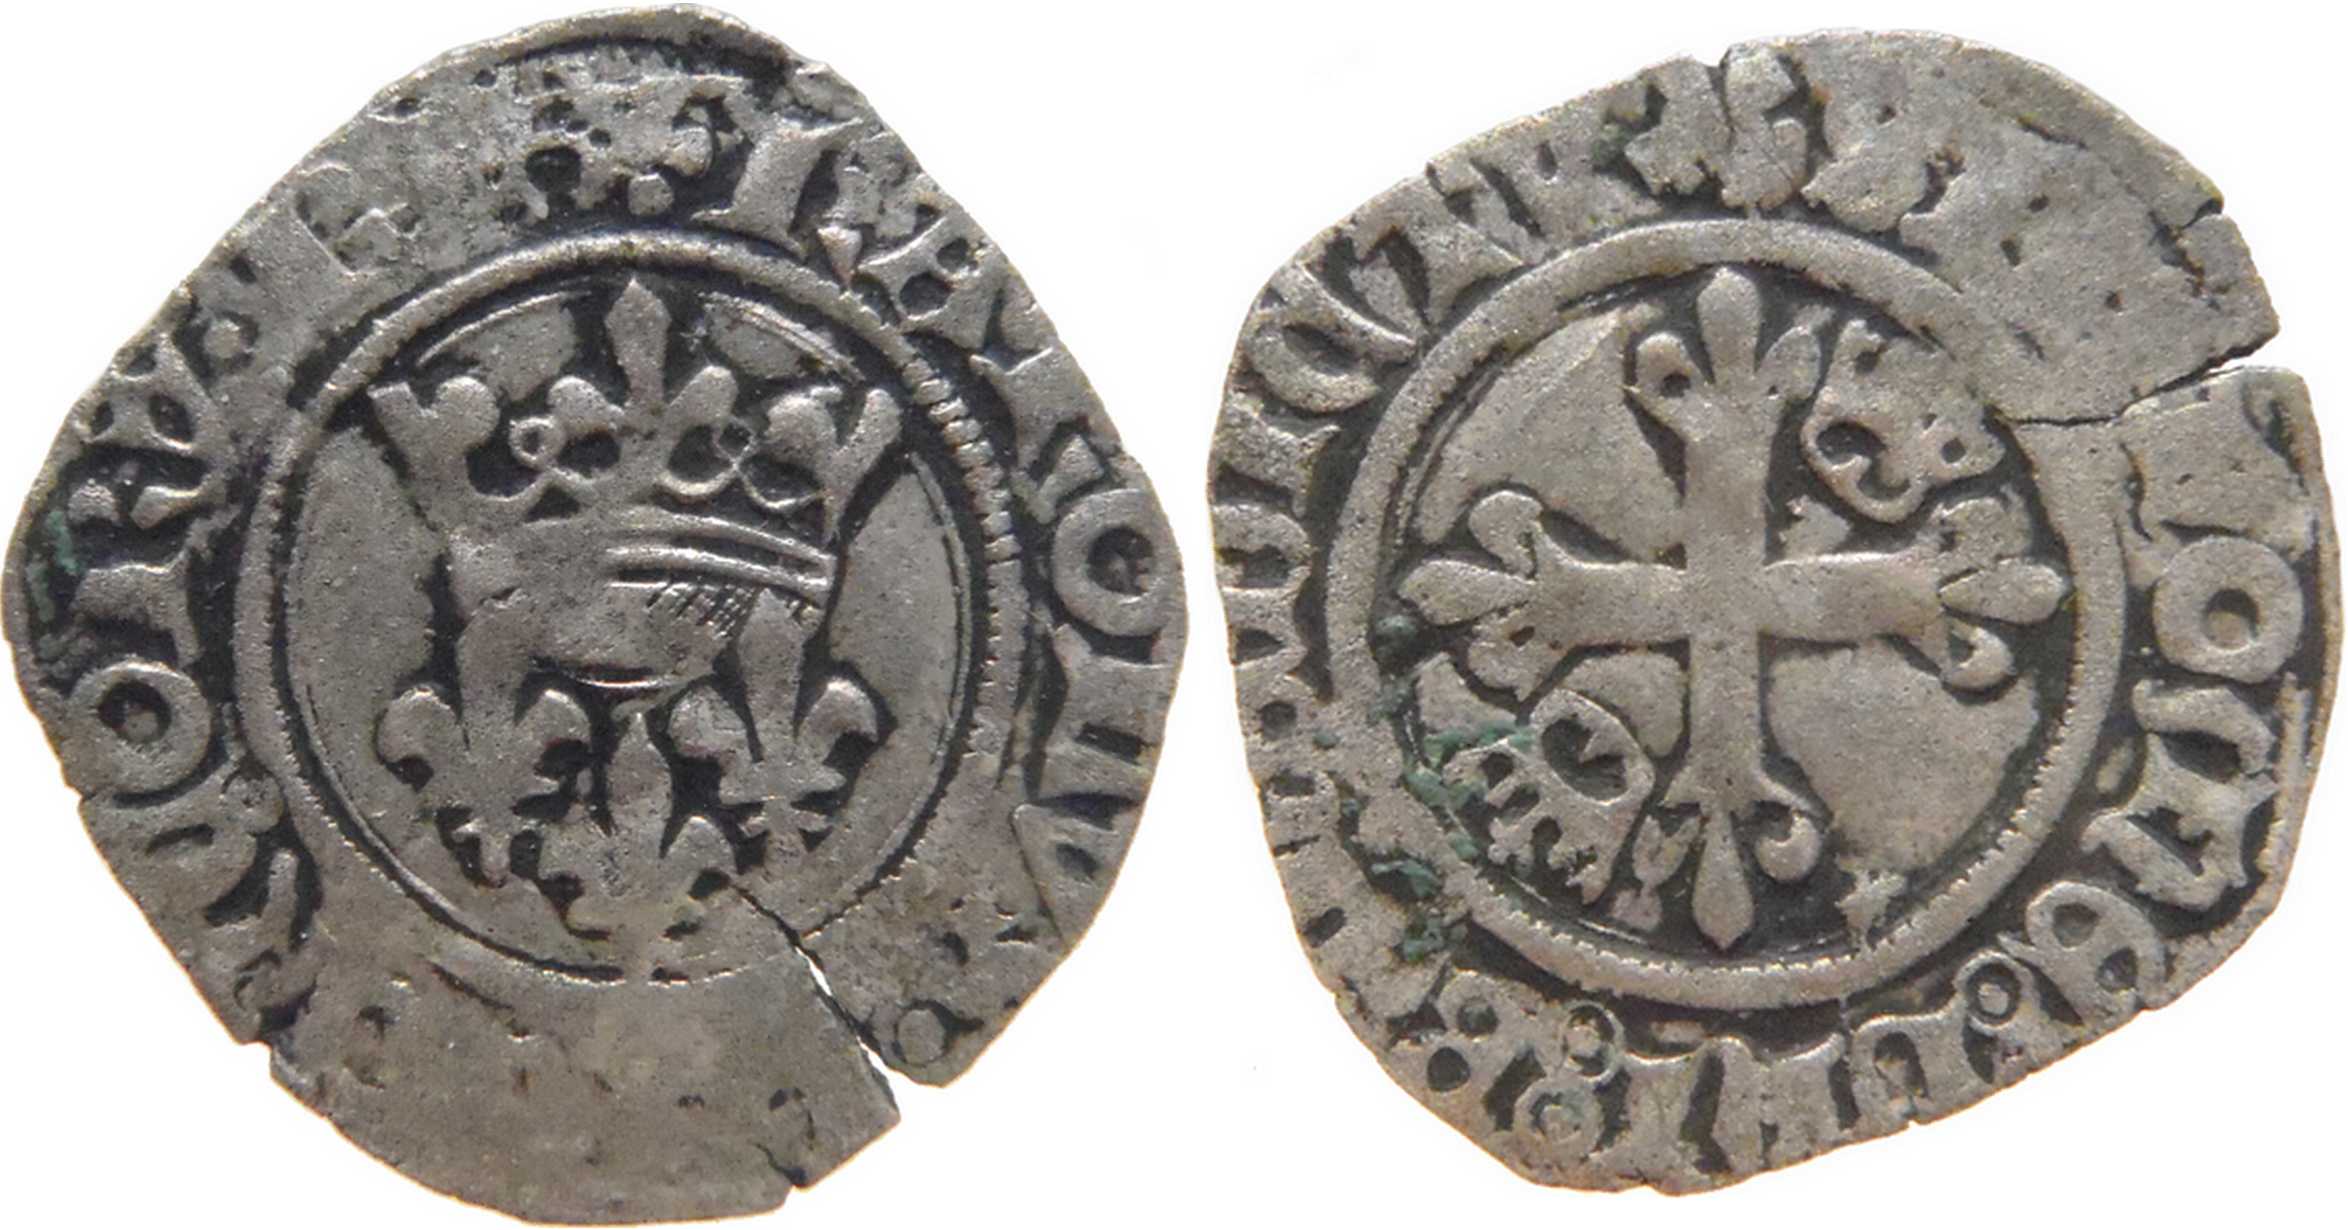 Approche typologique et chronologique des émissions de gros dits «florettes» au nom de Charles VI produites à Mâcon entre 1417 et 1421 – partie 12 – complément 1